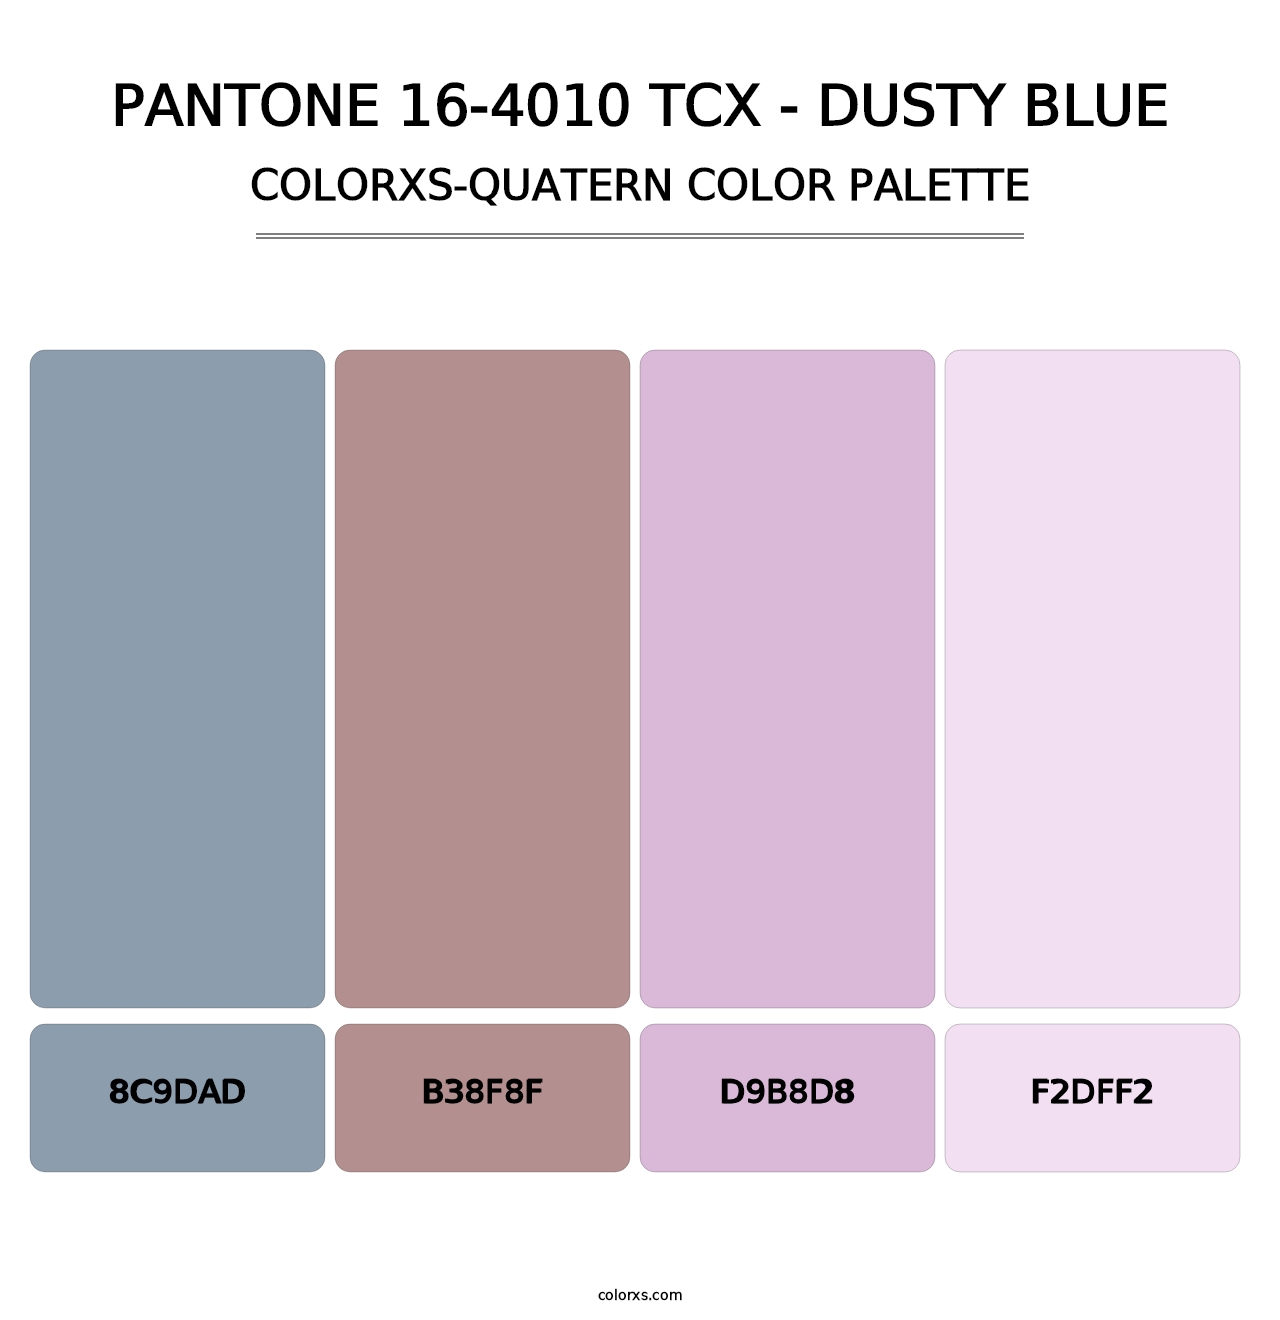 PANTONE 16-4010 TCX - Dusty Blue - Colorxs Quatern Palette